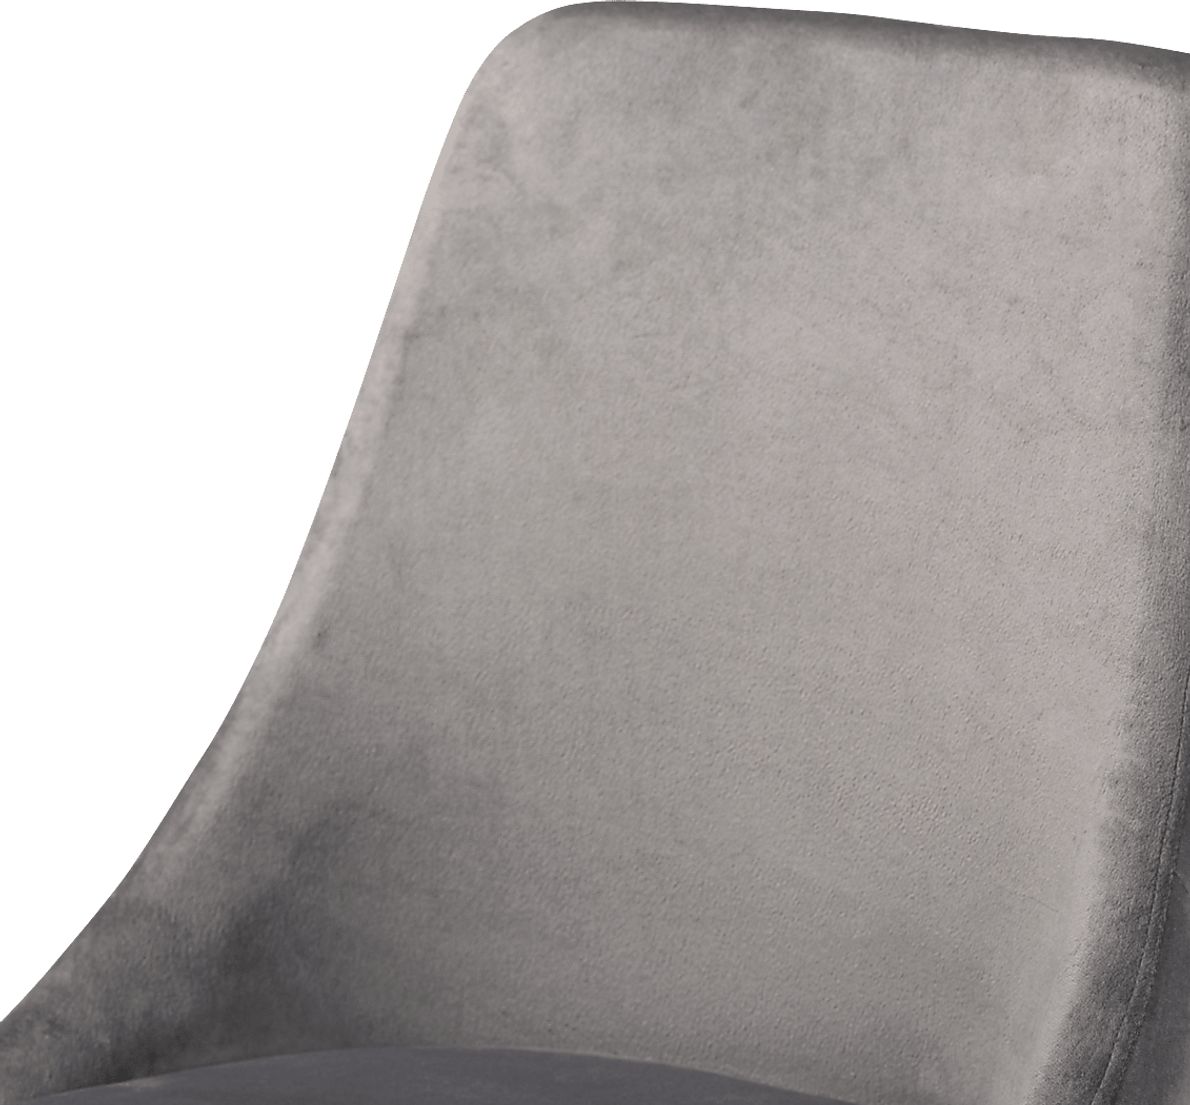 Lepak Gray Side Chair, Set of 2